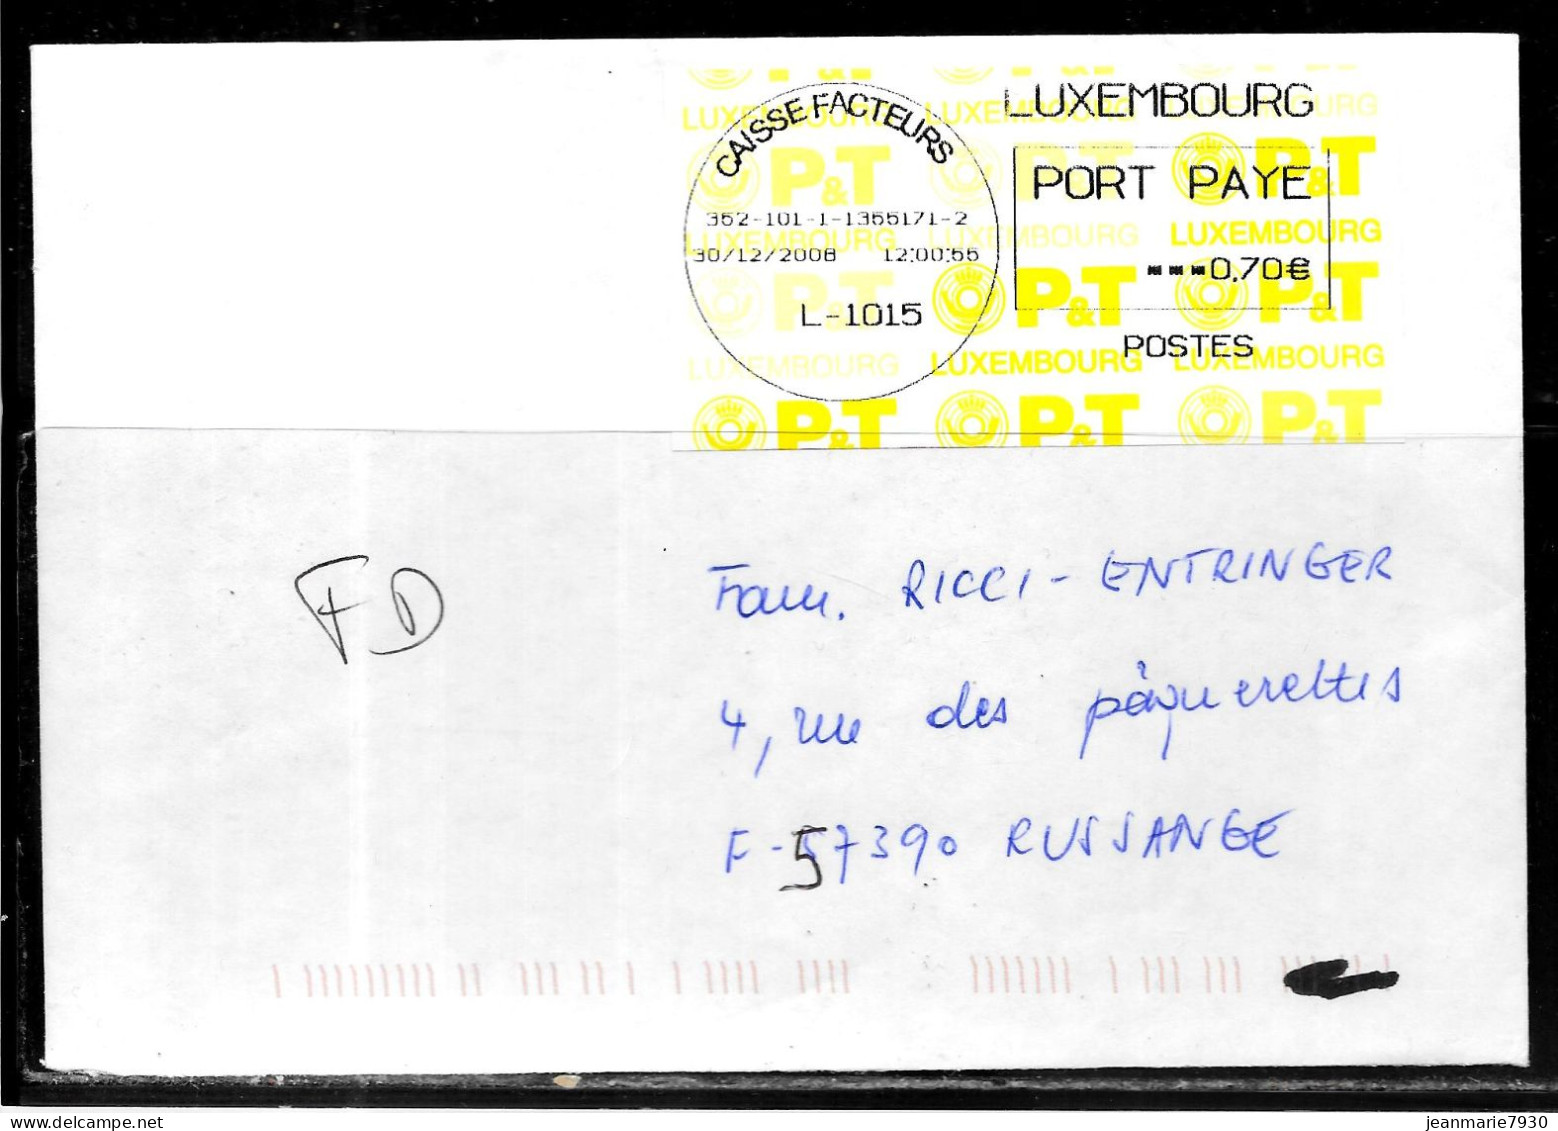 H350 - LETTRE DE LUXEMBOURG CAISSE FACTEURS DU 30/12/08 POUR LA FRANCE - FD ( FAUSSE DIRECTION ) - Frankeermachines (EMA)